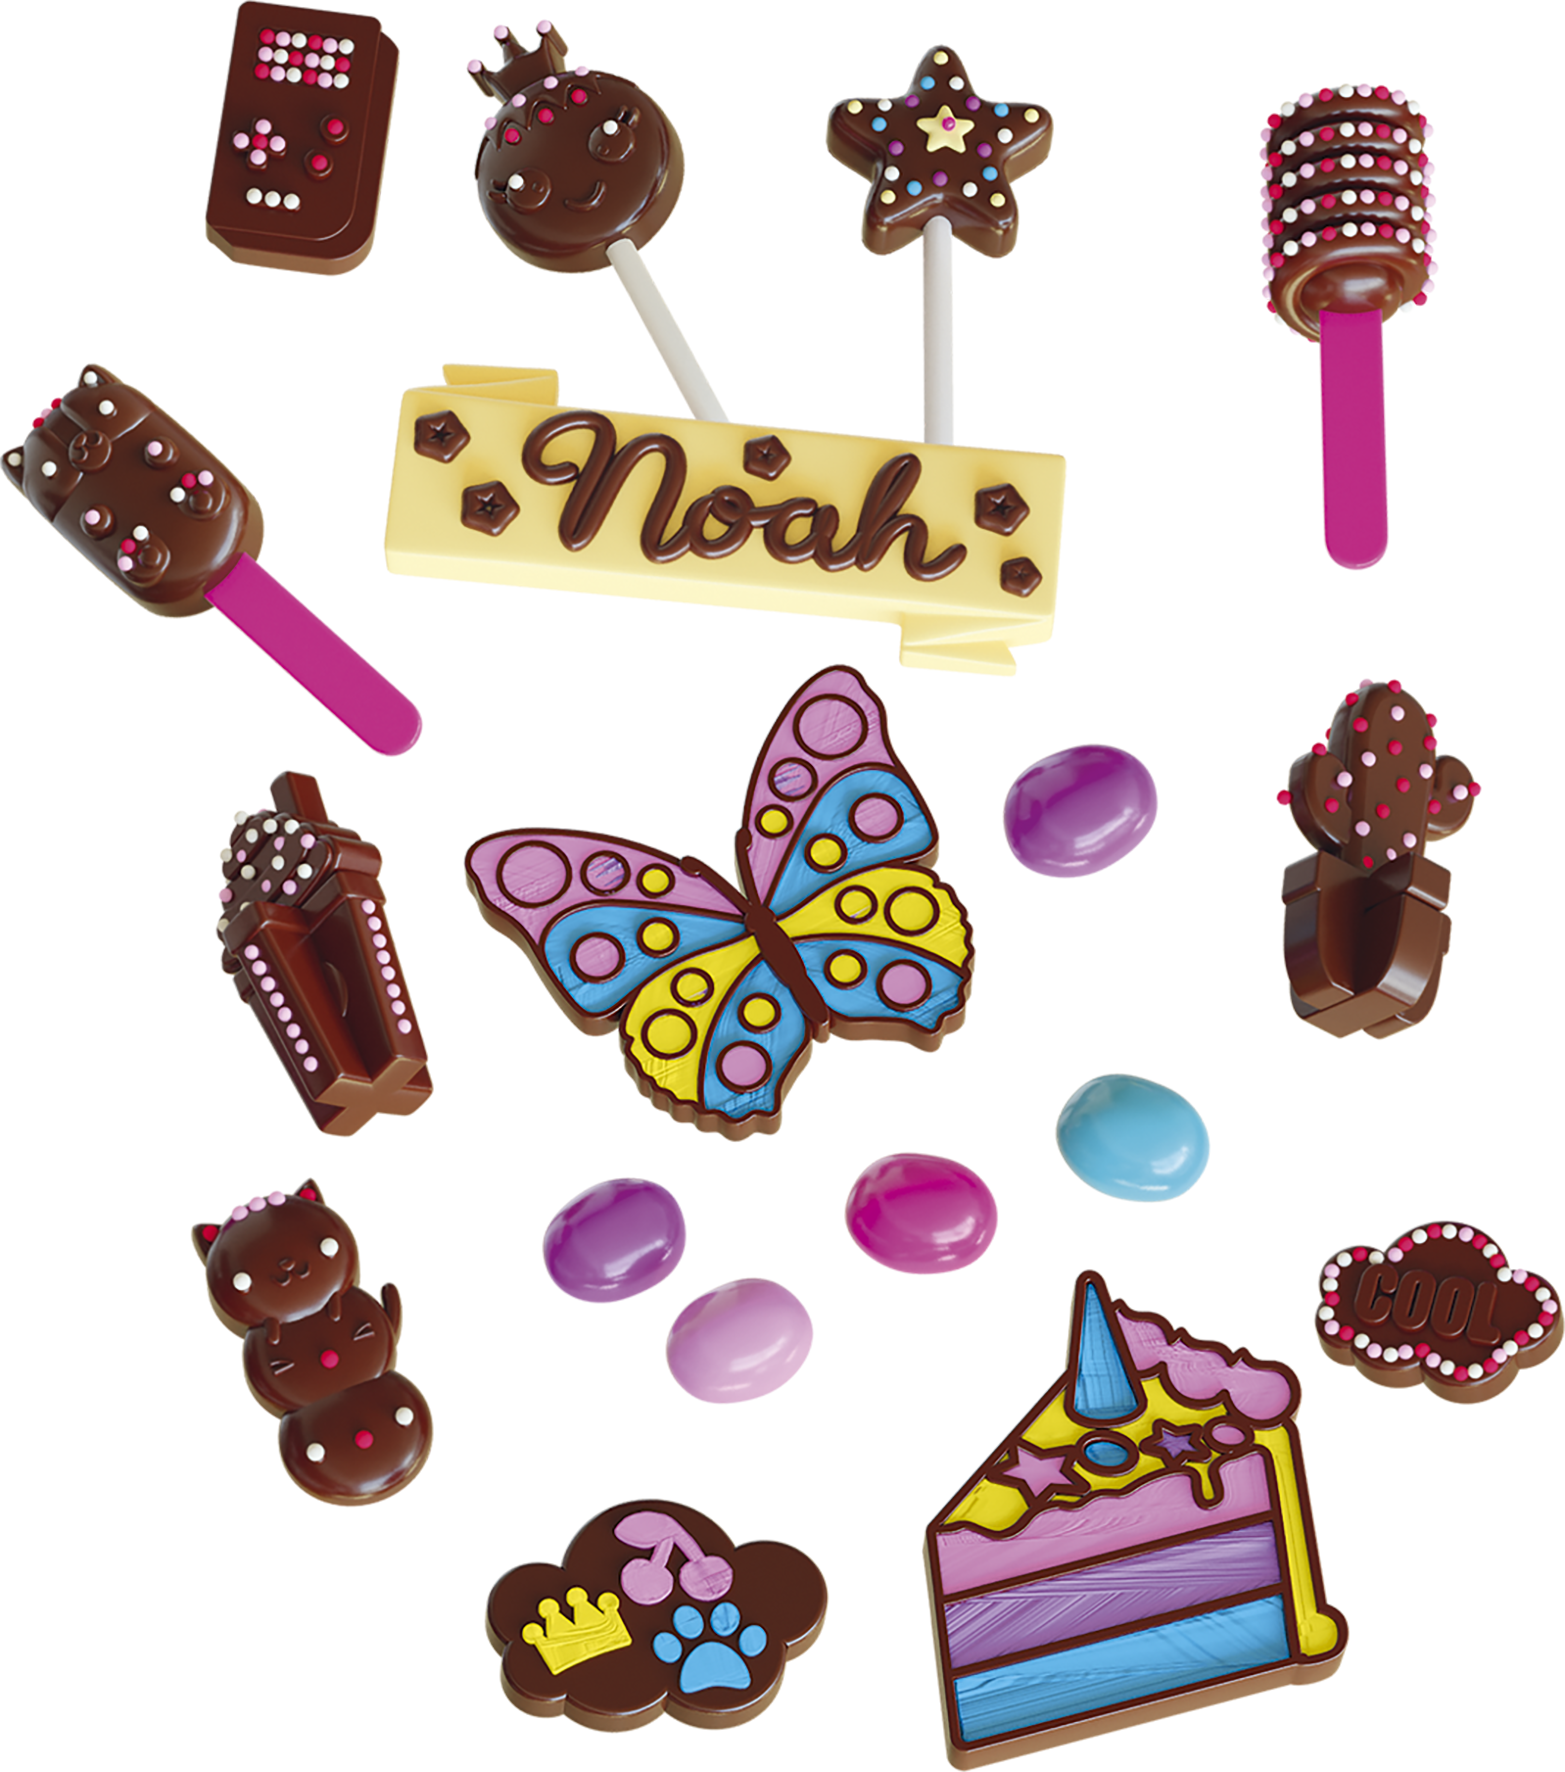 Mini-Délices Atelier Chocolat 10 en 1